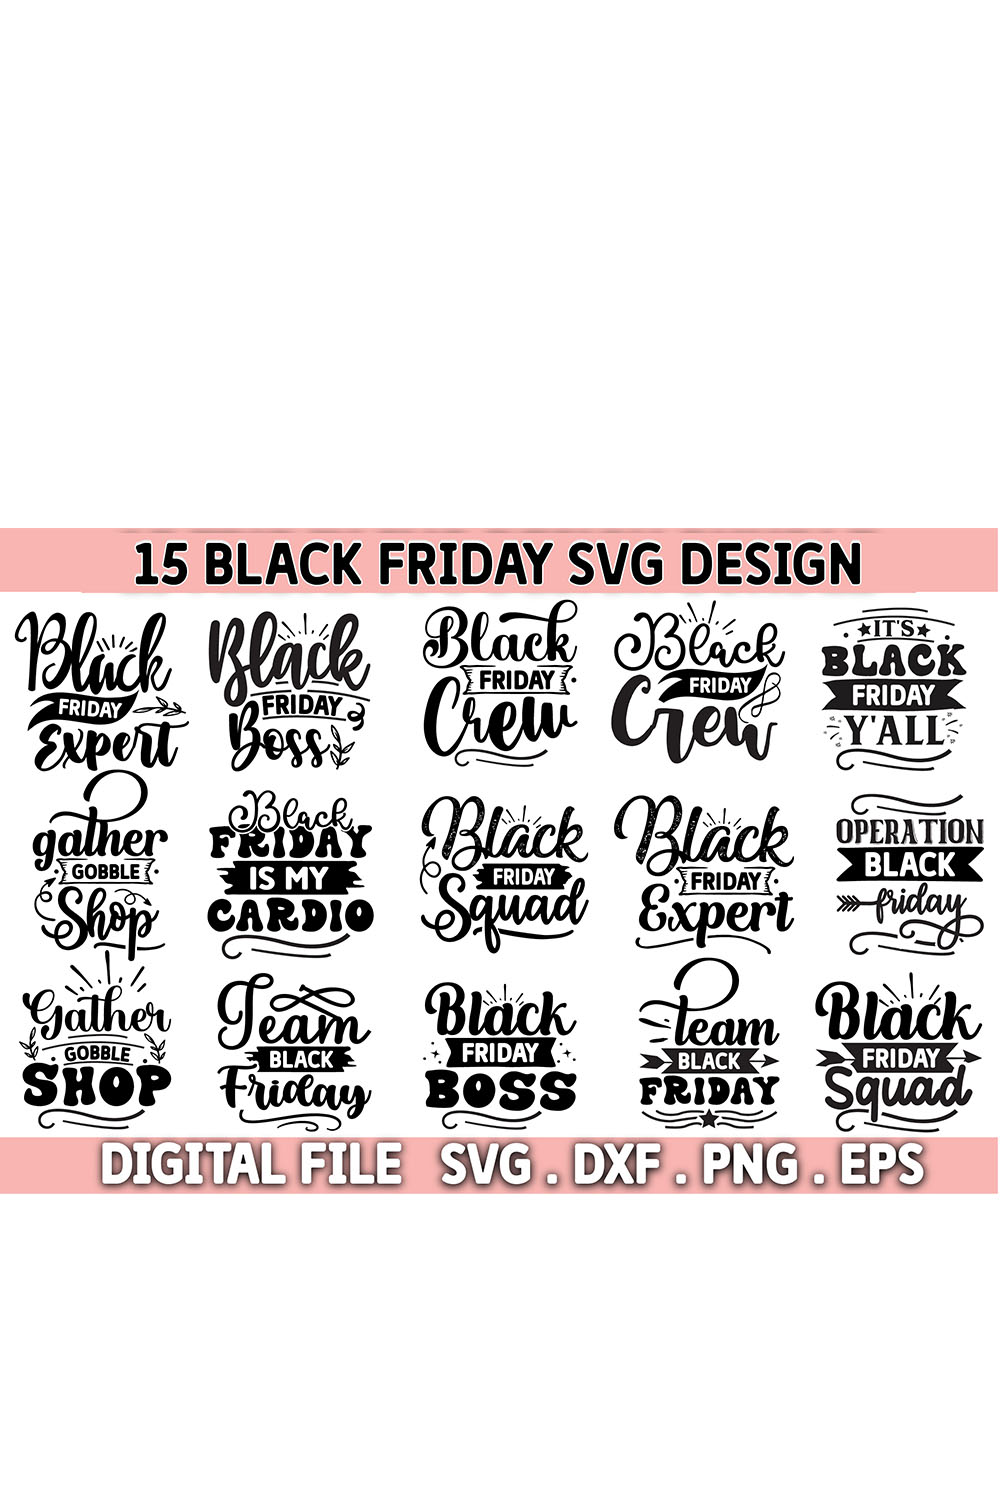 Black Friday SVG bundle,Black friday shirt pinterest preview image.